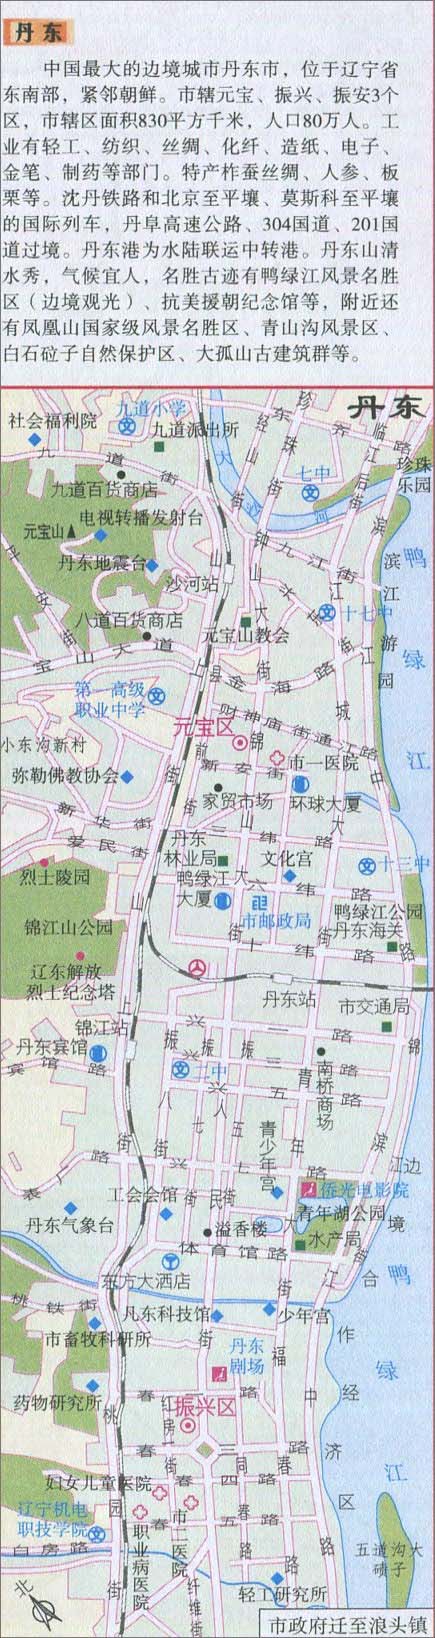 丹东城区旅游地图